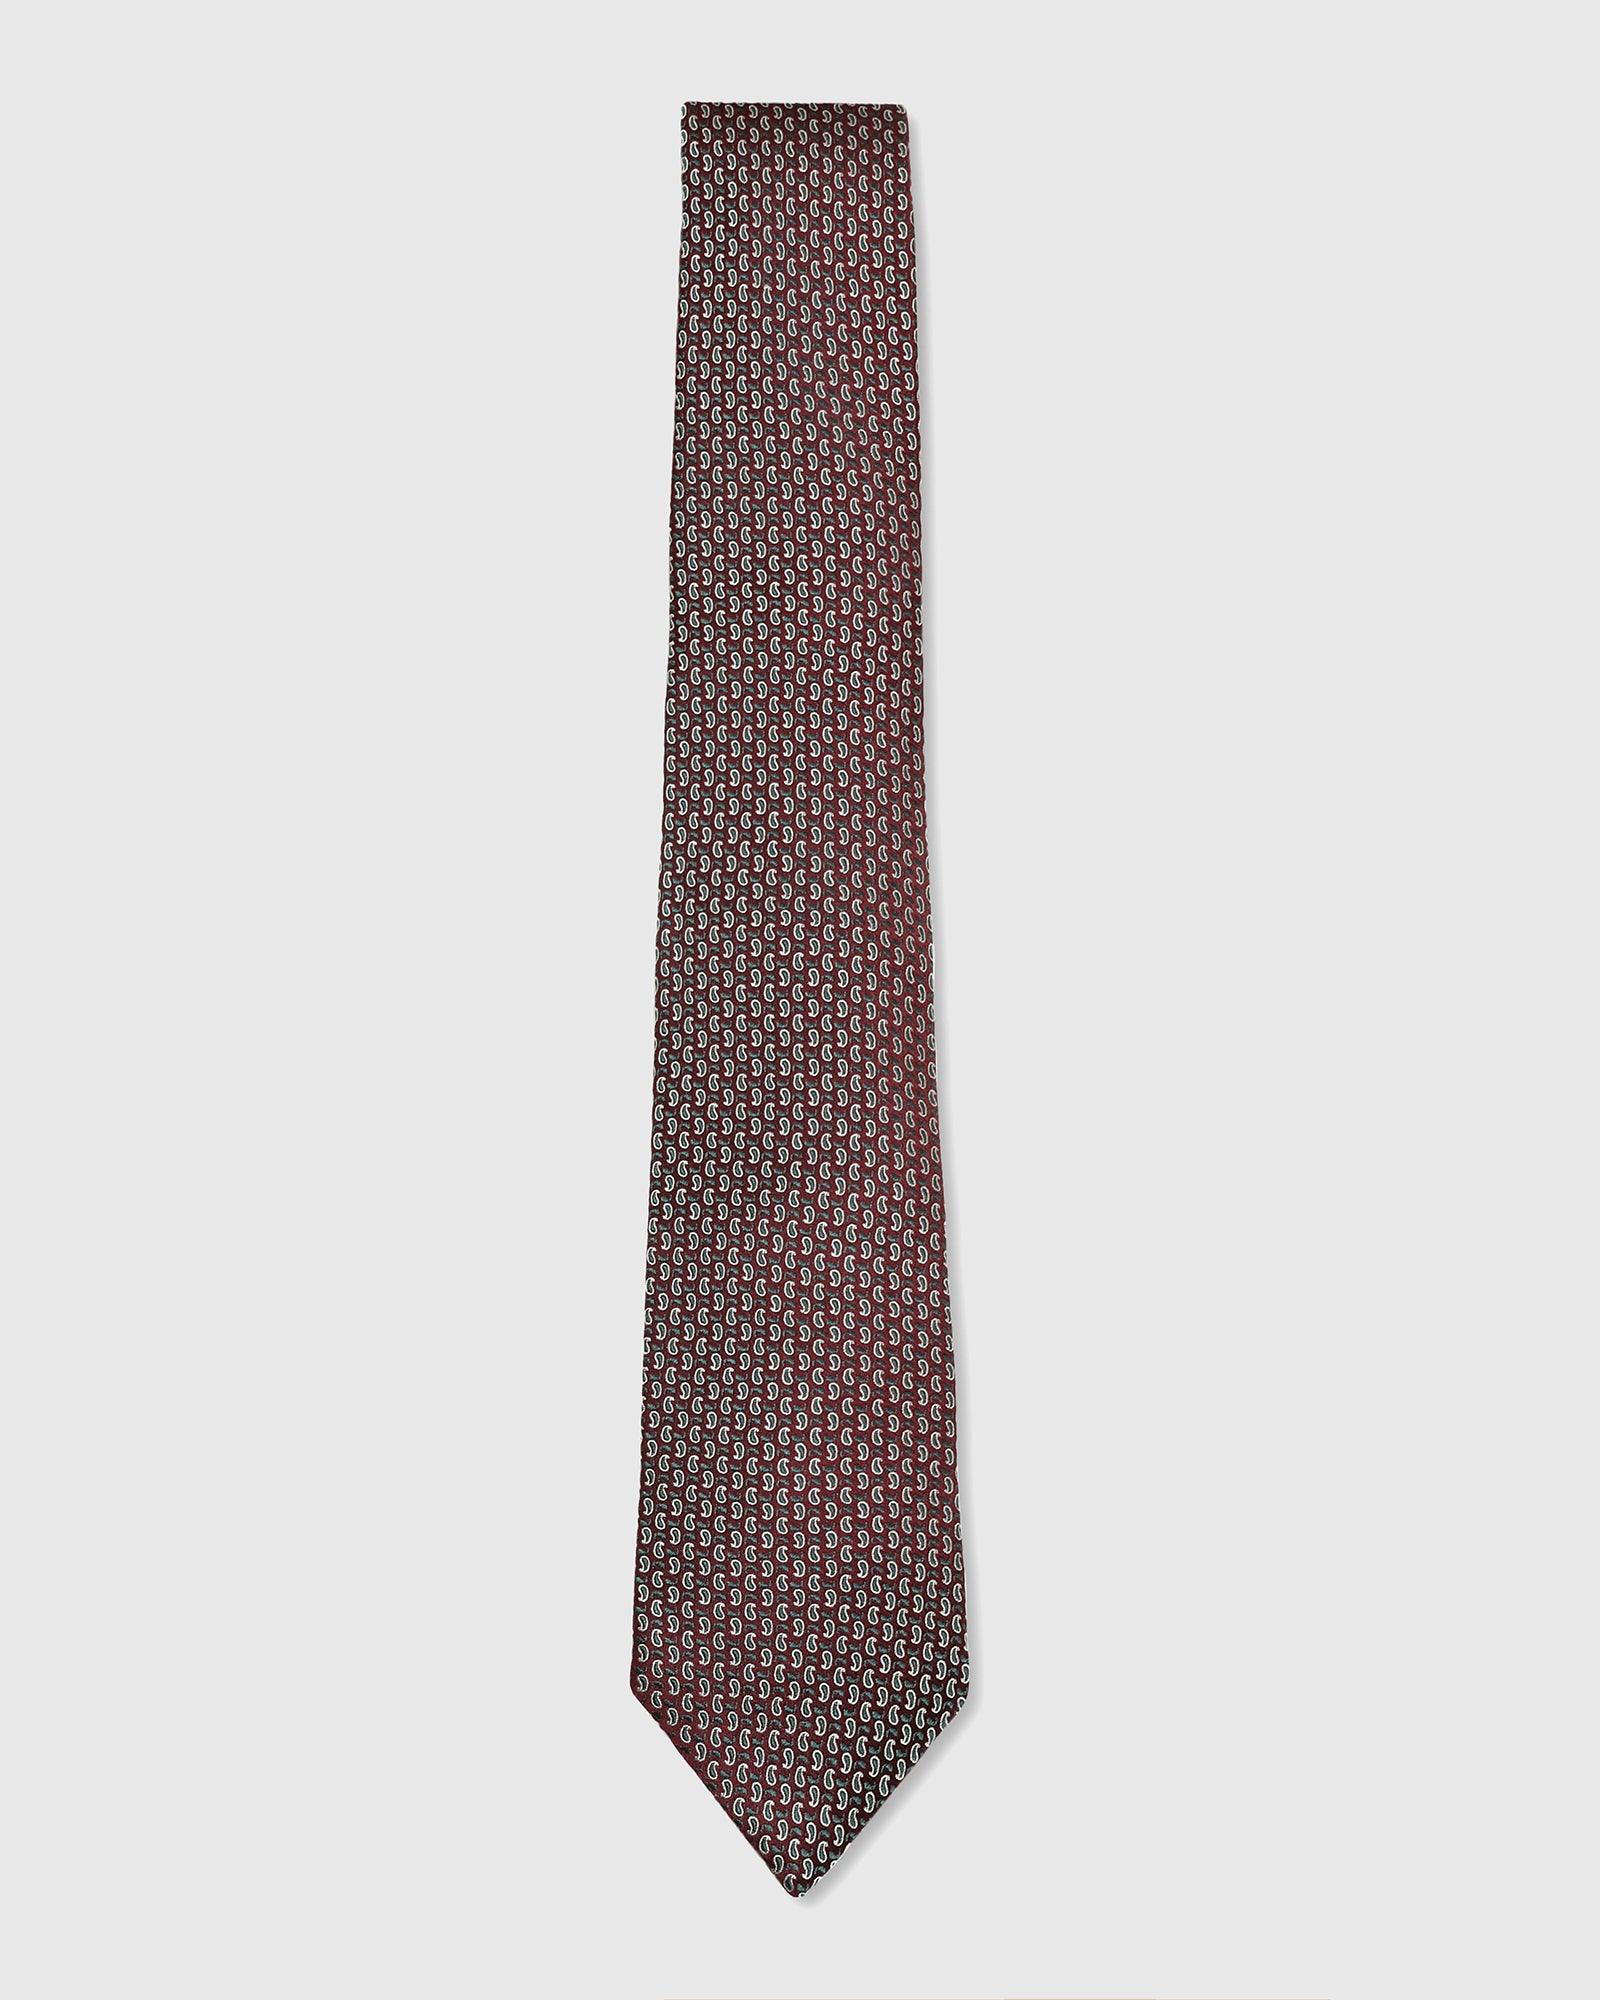 Printed Tie In Brown (Twin) - Blackberrys